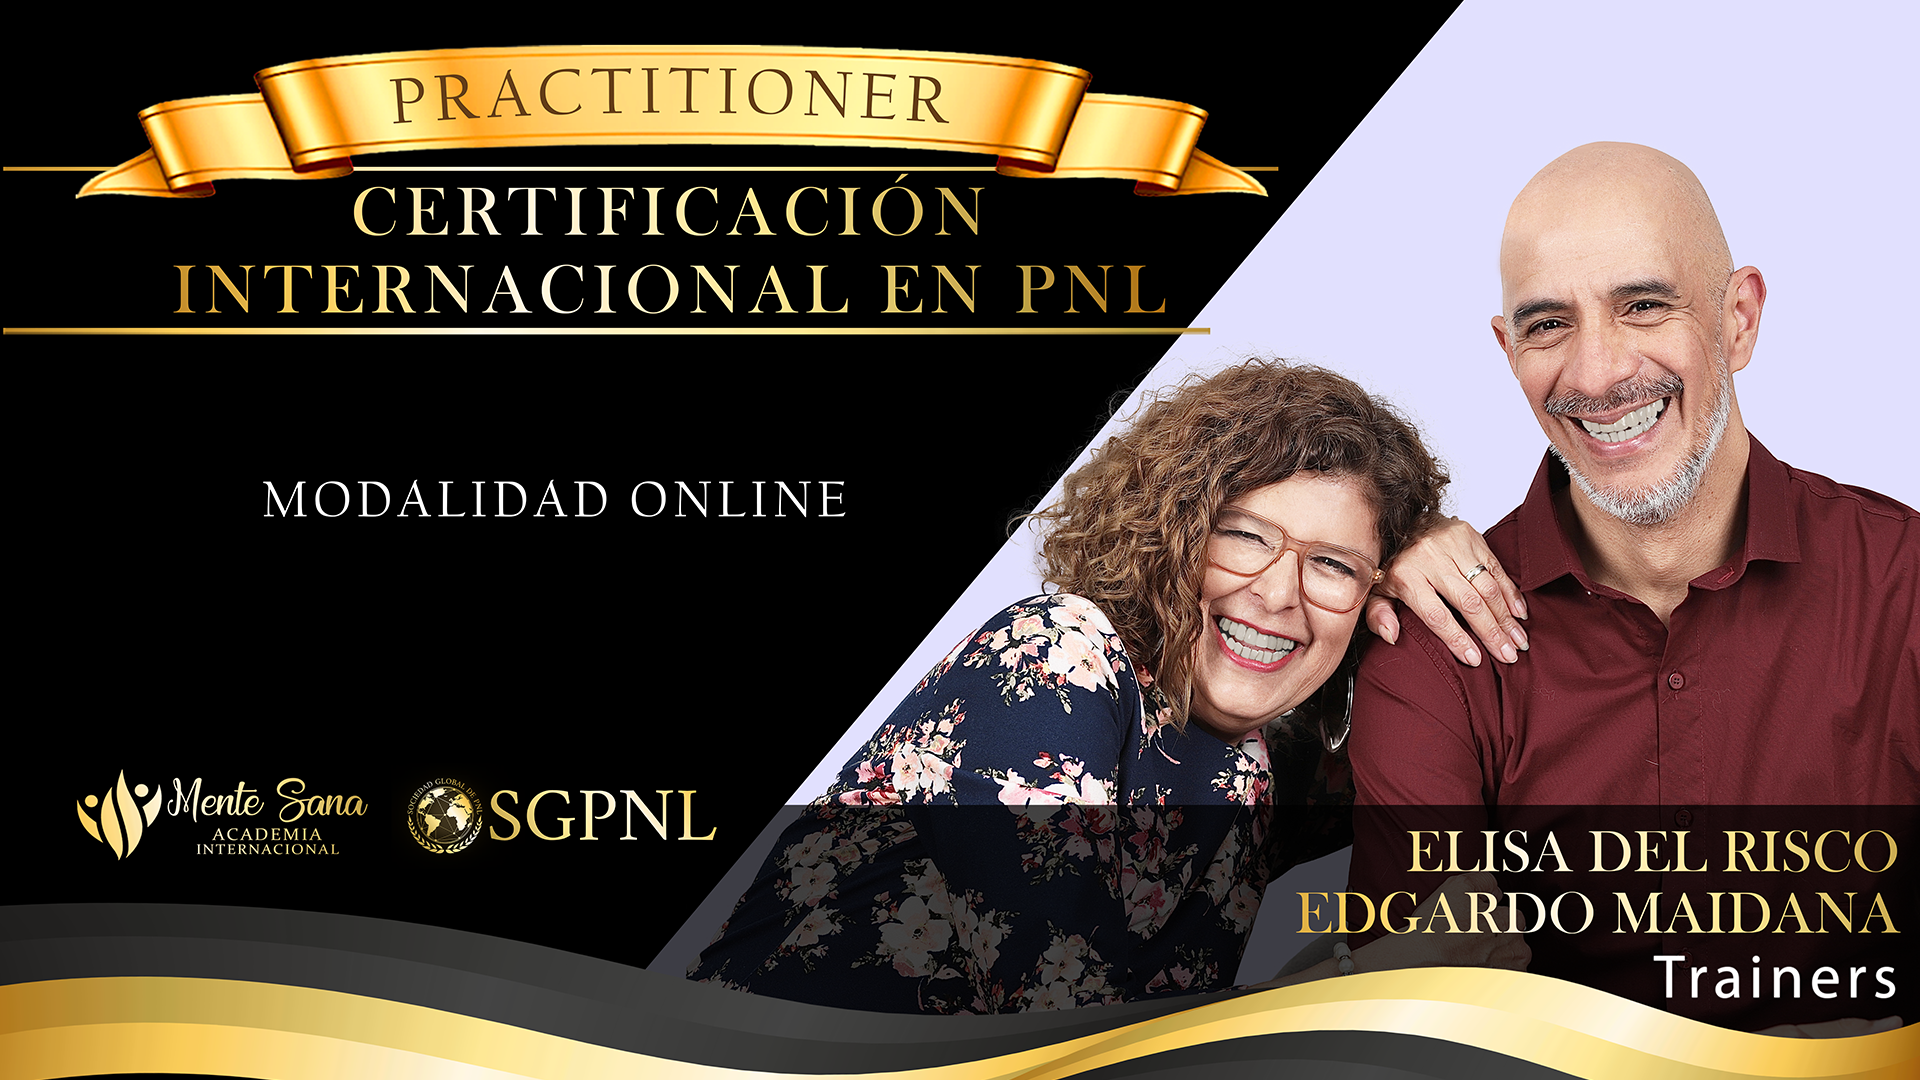 Practitioner de PNL con triple Certificación